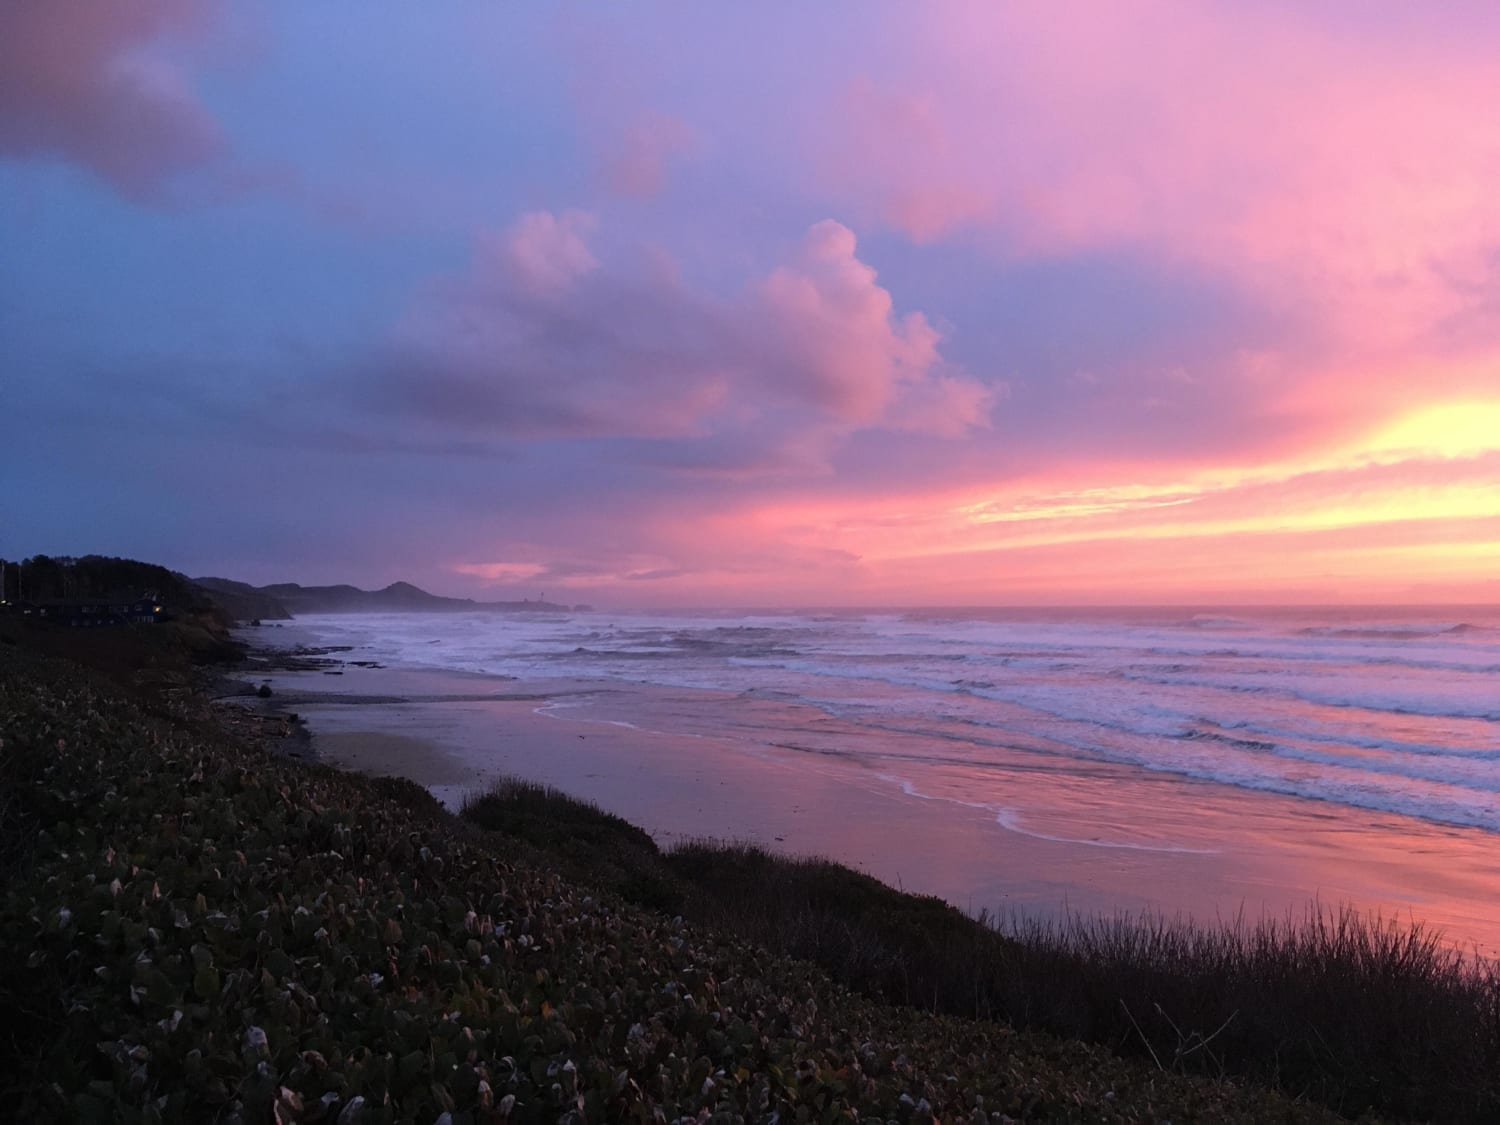 Sunset last night on the Oregon coast